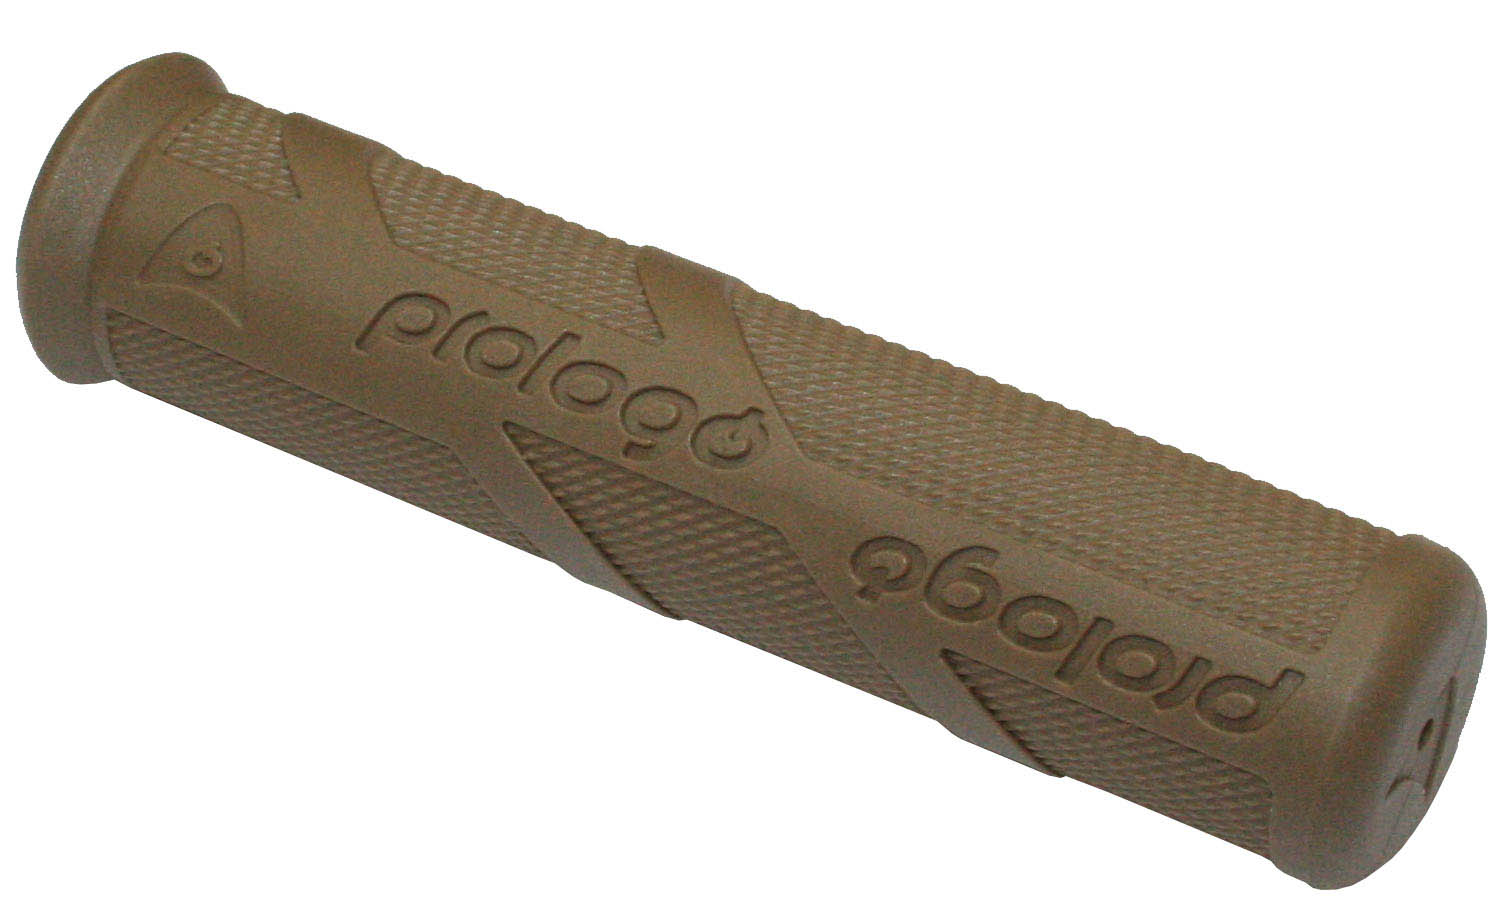 Грипсы 130мм, коричневые, кратон, 50г, c лого "Prologo".